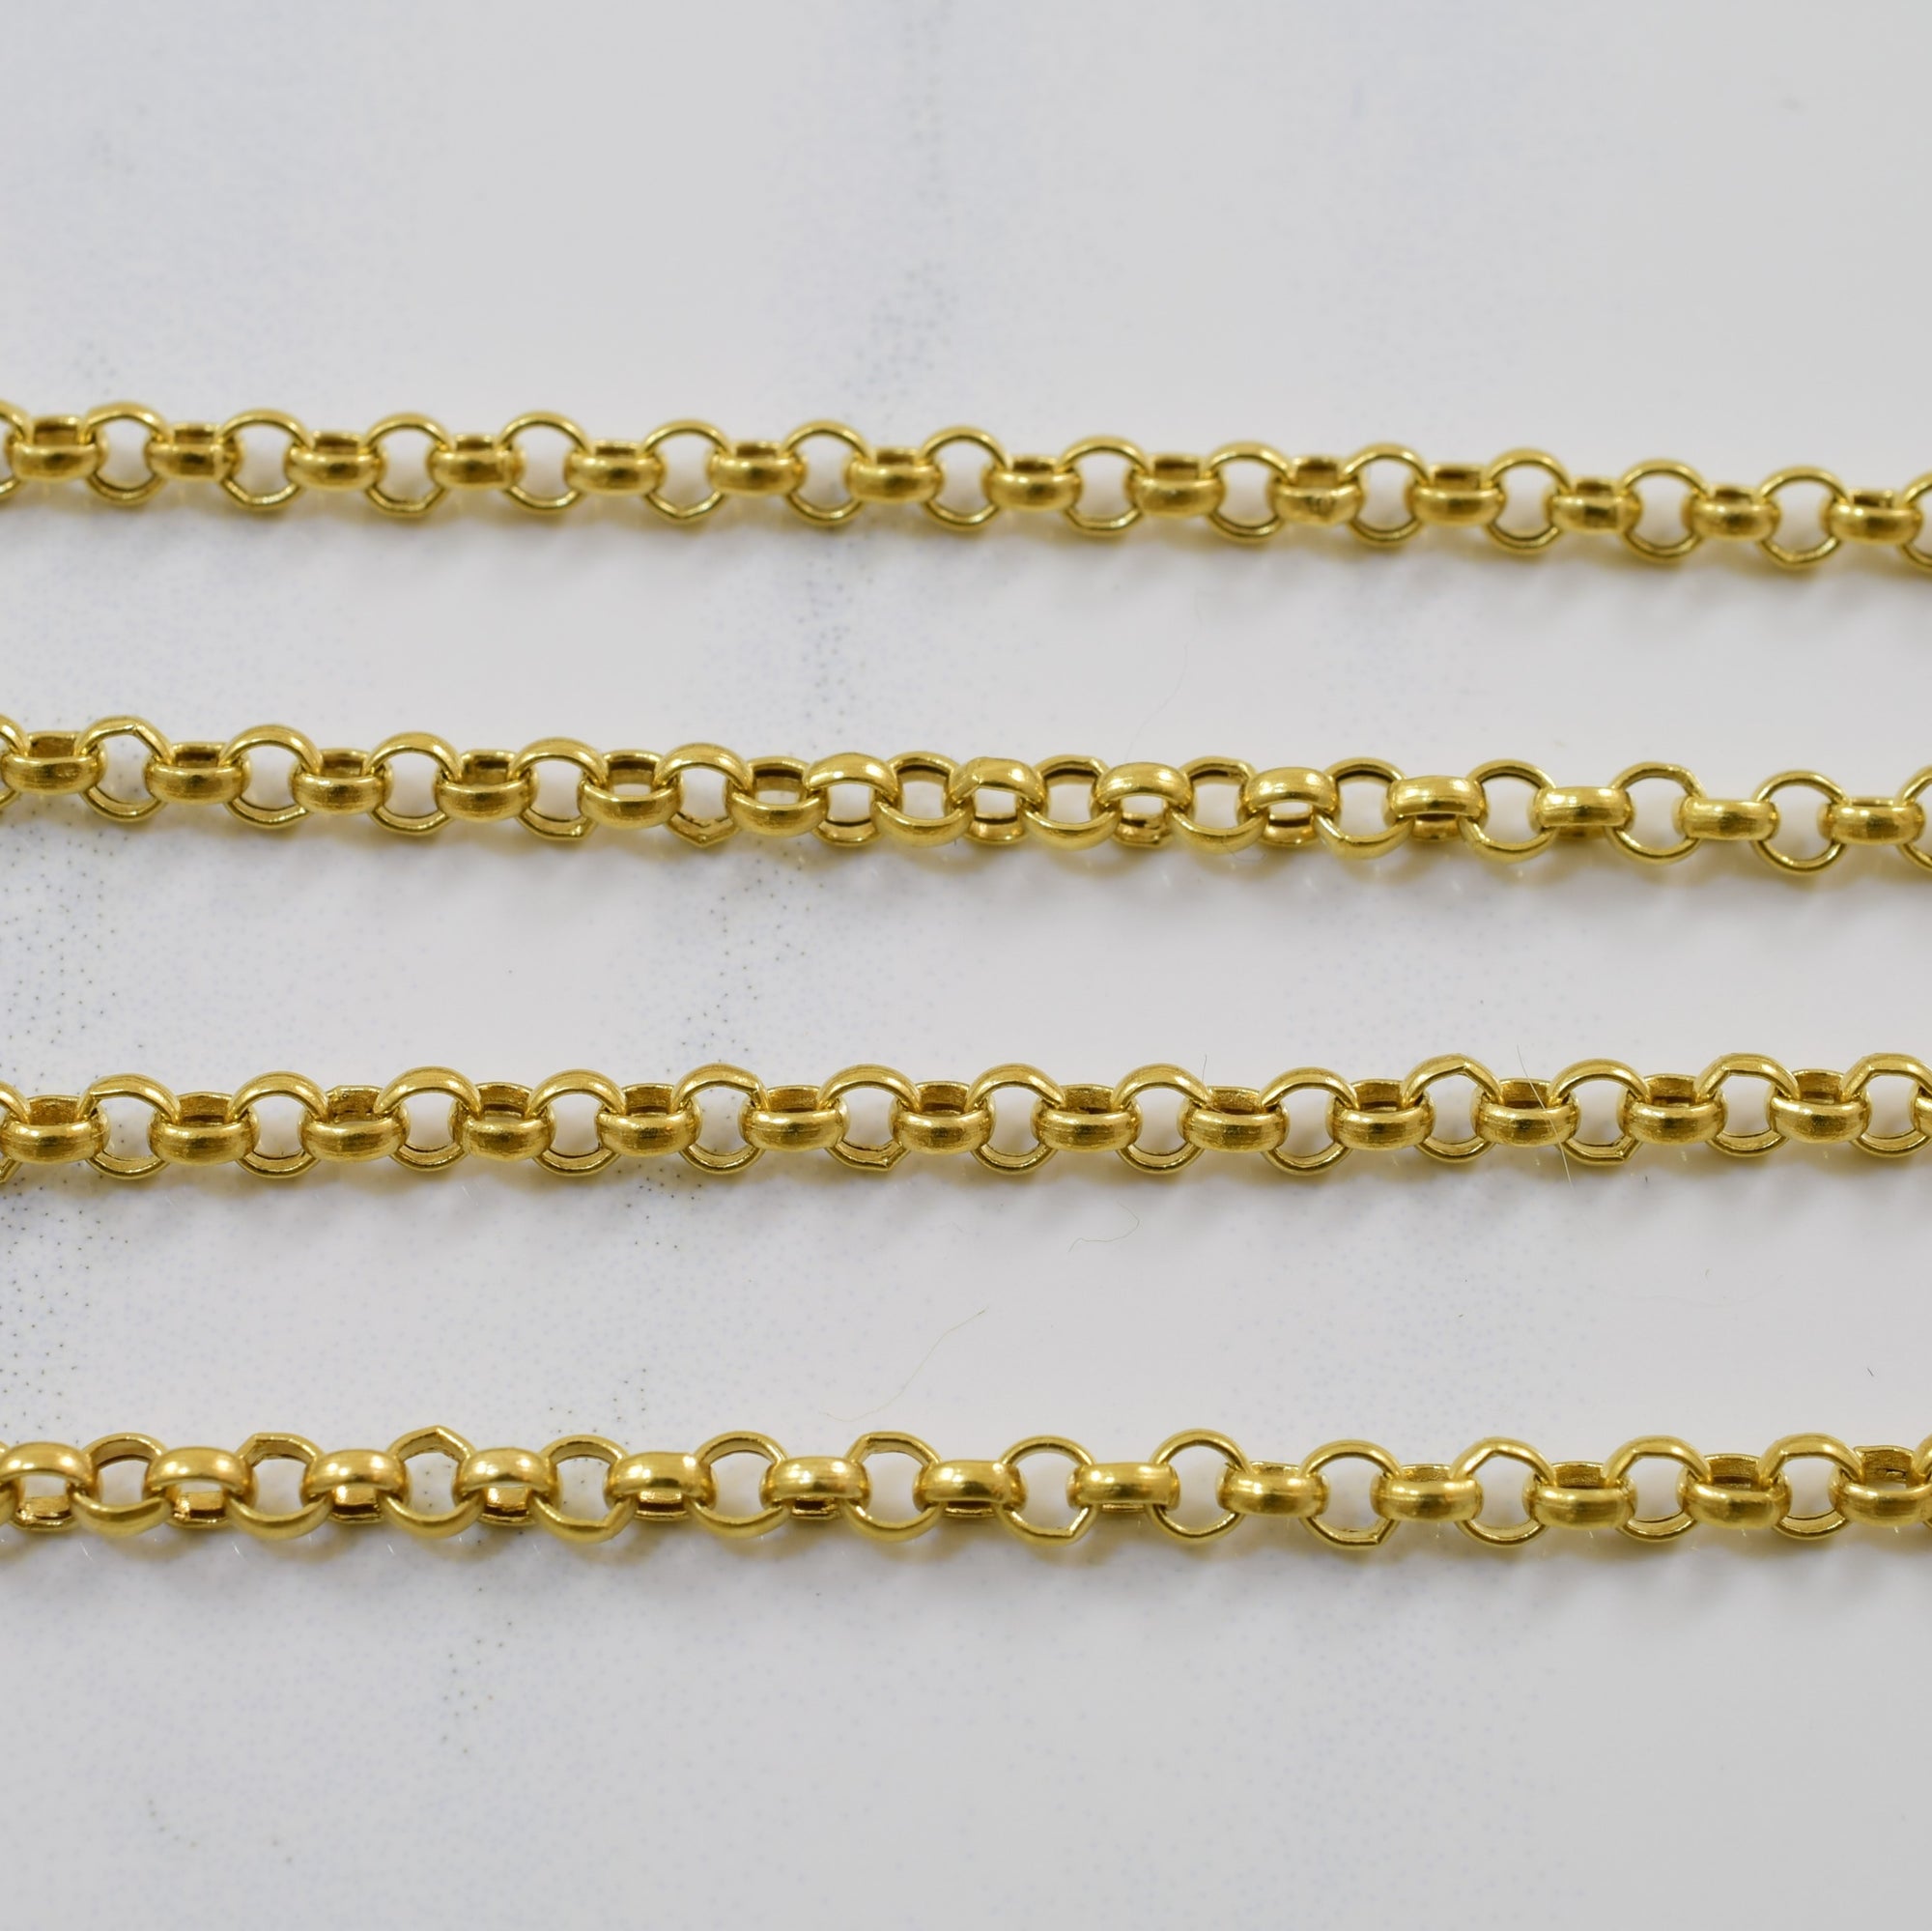 Trillion Cut Garnet Necklace | 3.25ct | 18